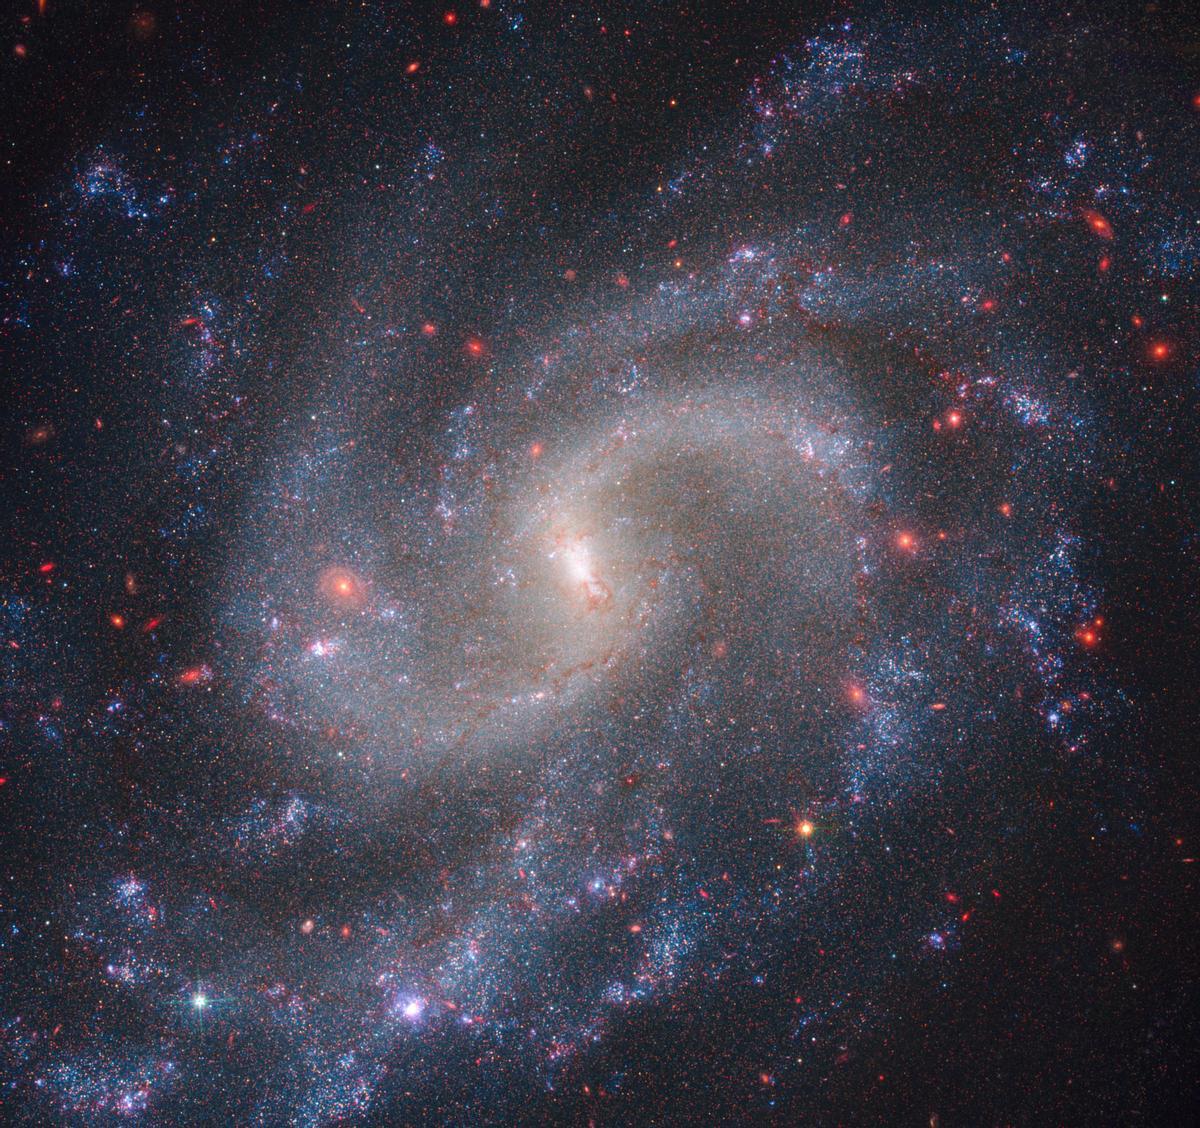 Entre las estrellas brillantes de la galaxia NGC 5584 (imagen) se encuentran estrellas pulsantes llamadas variables Cefeidas y supernovas de Tipo Ia, utilizadas por los astrónomos como marcadores de distancia fiables para medir la tasa de expansión del Universo.